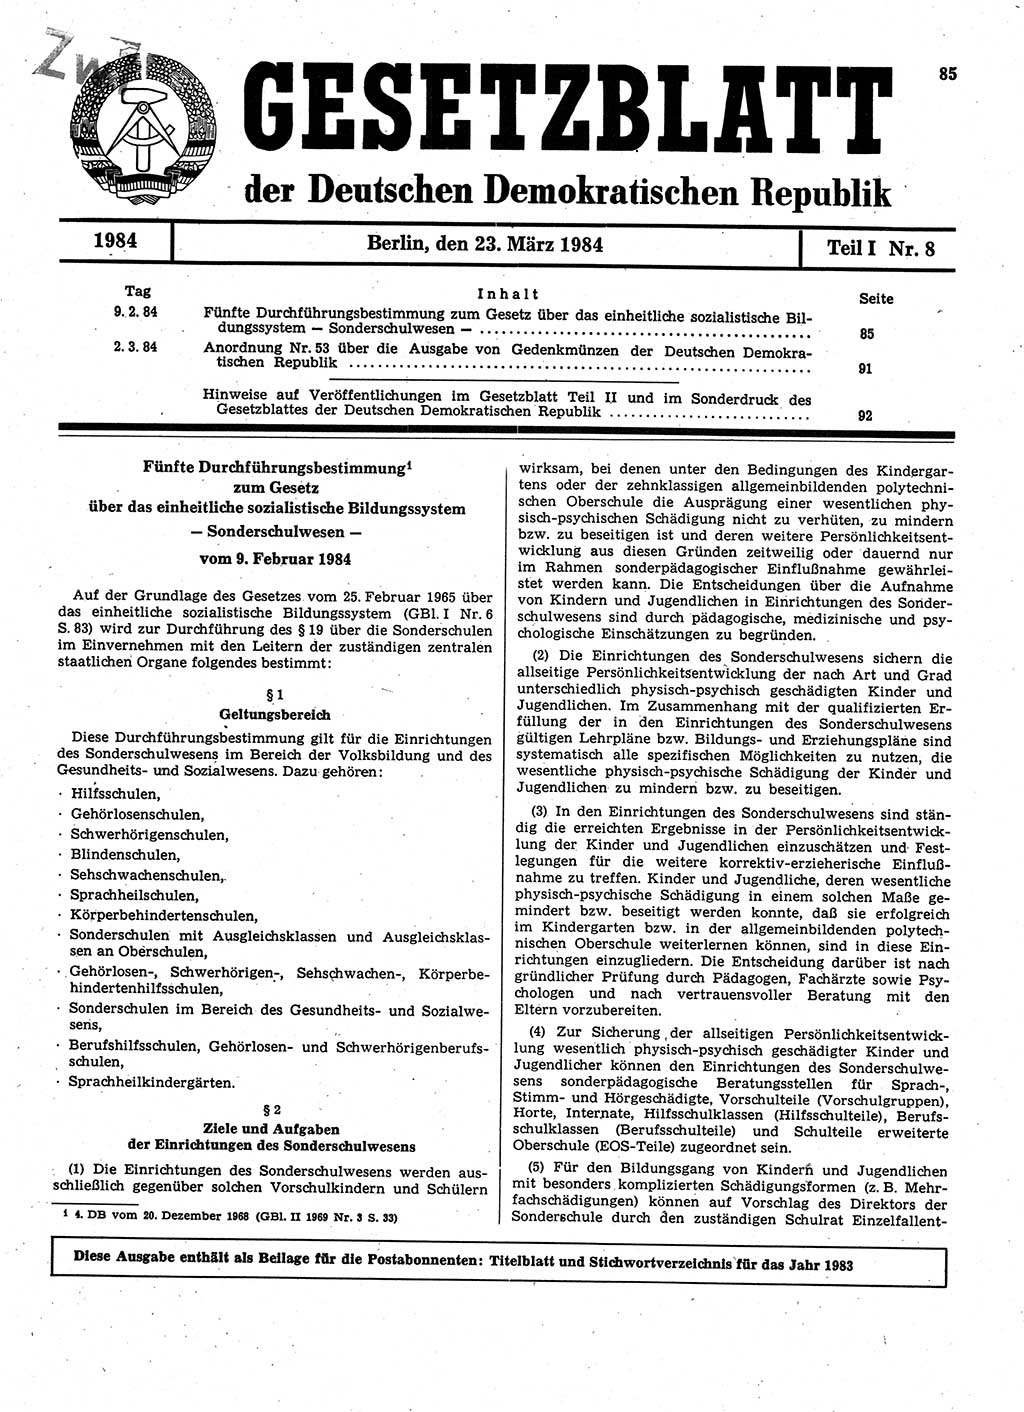 Gesetzblatt (GBl.) der Deutschen Demokratischen Republik (DDR) Teil Ⅰ 1984, Seite 85 (GBl. DDR Ⅰ 1984, S. 85)